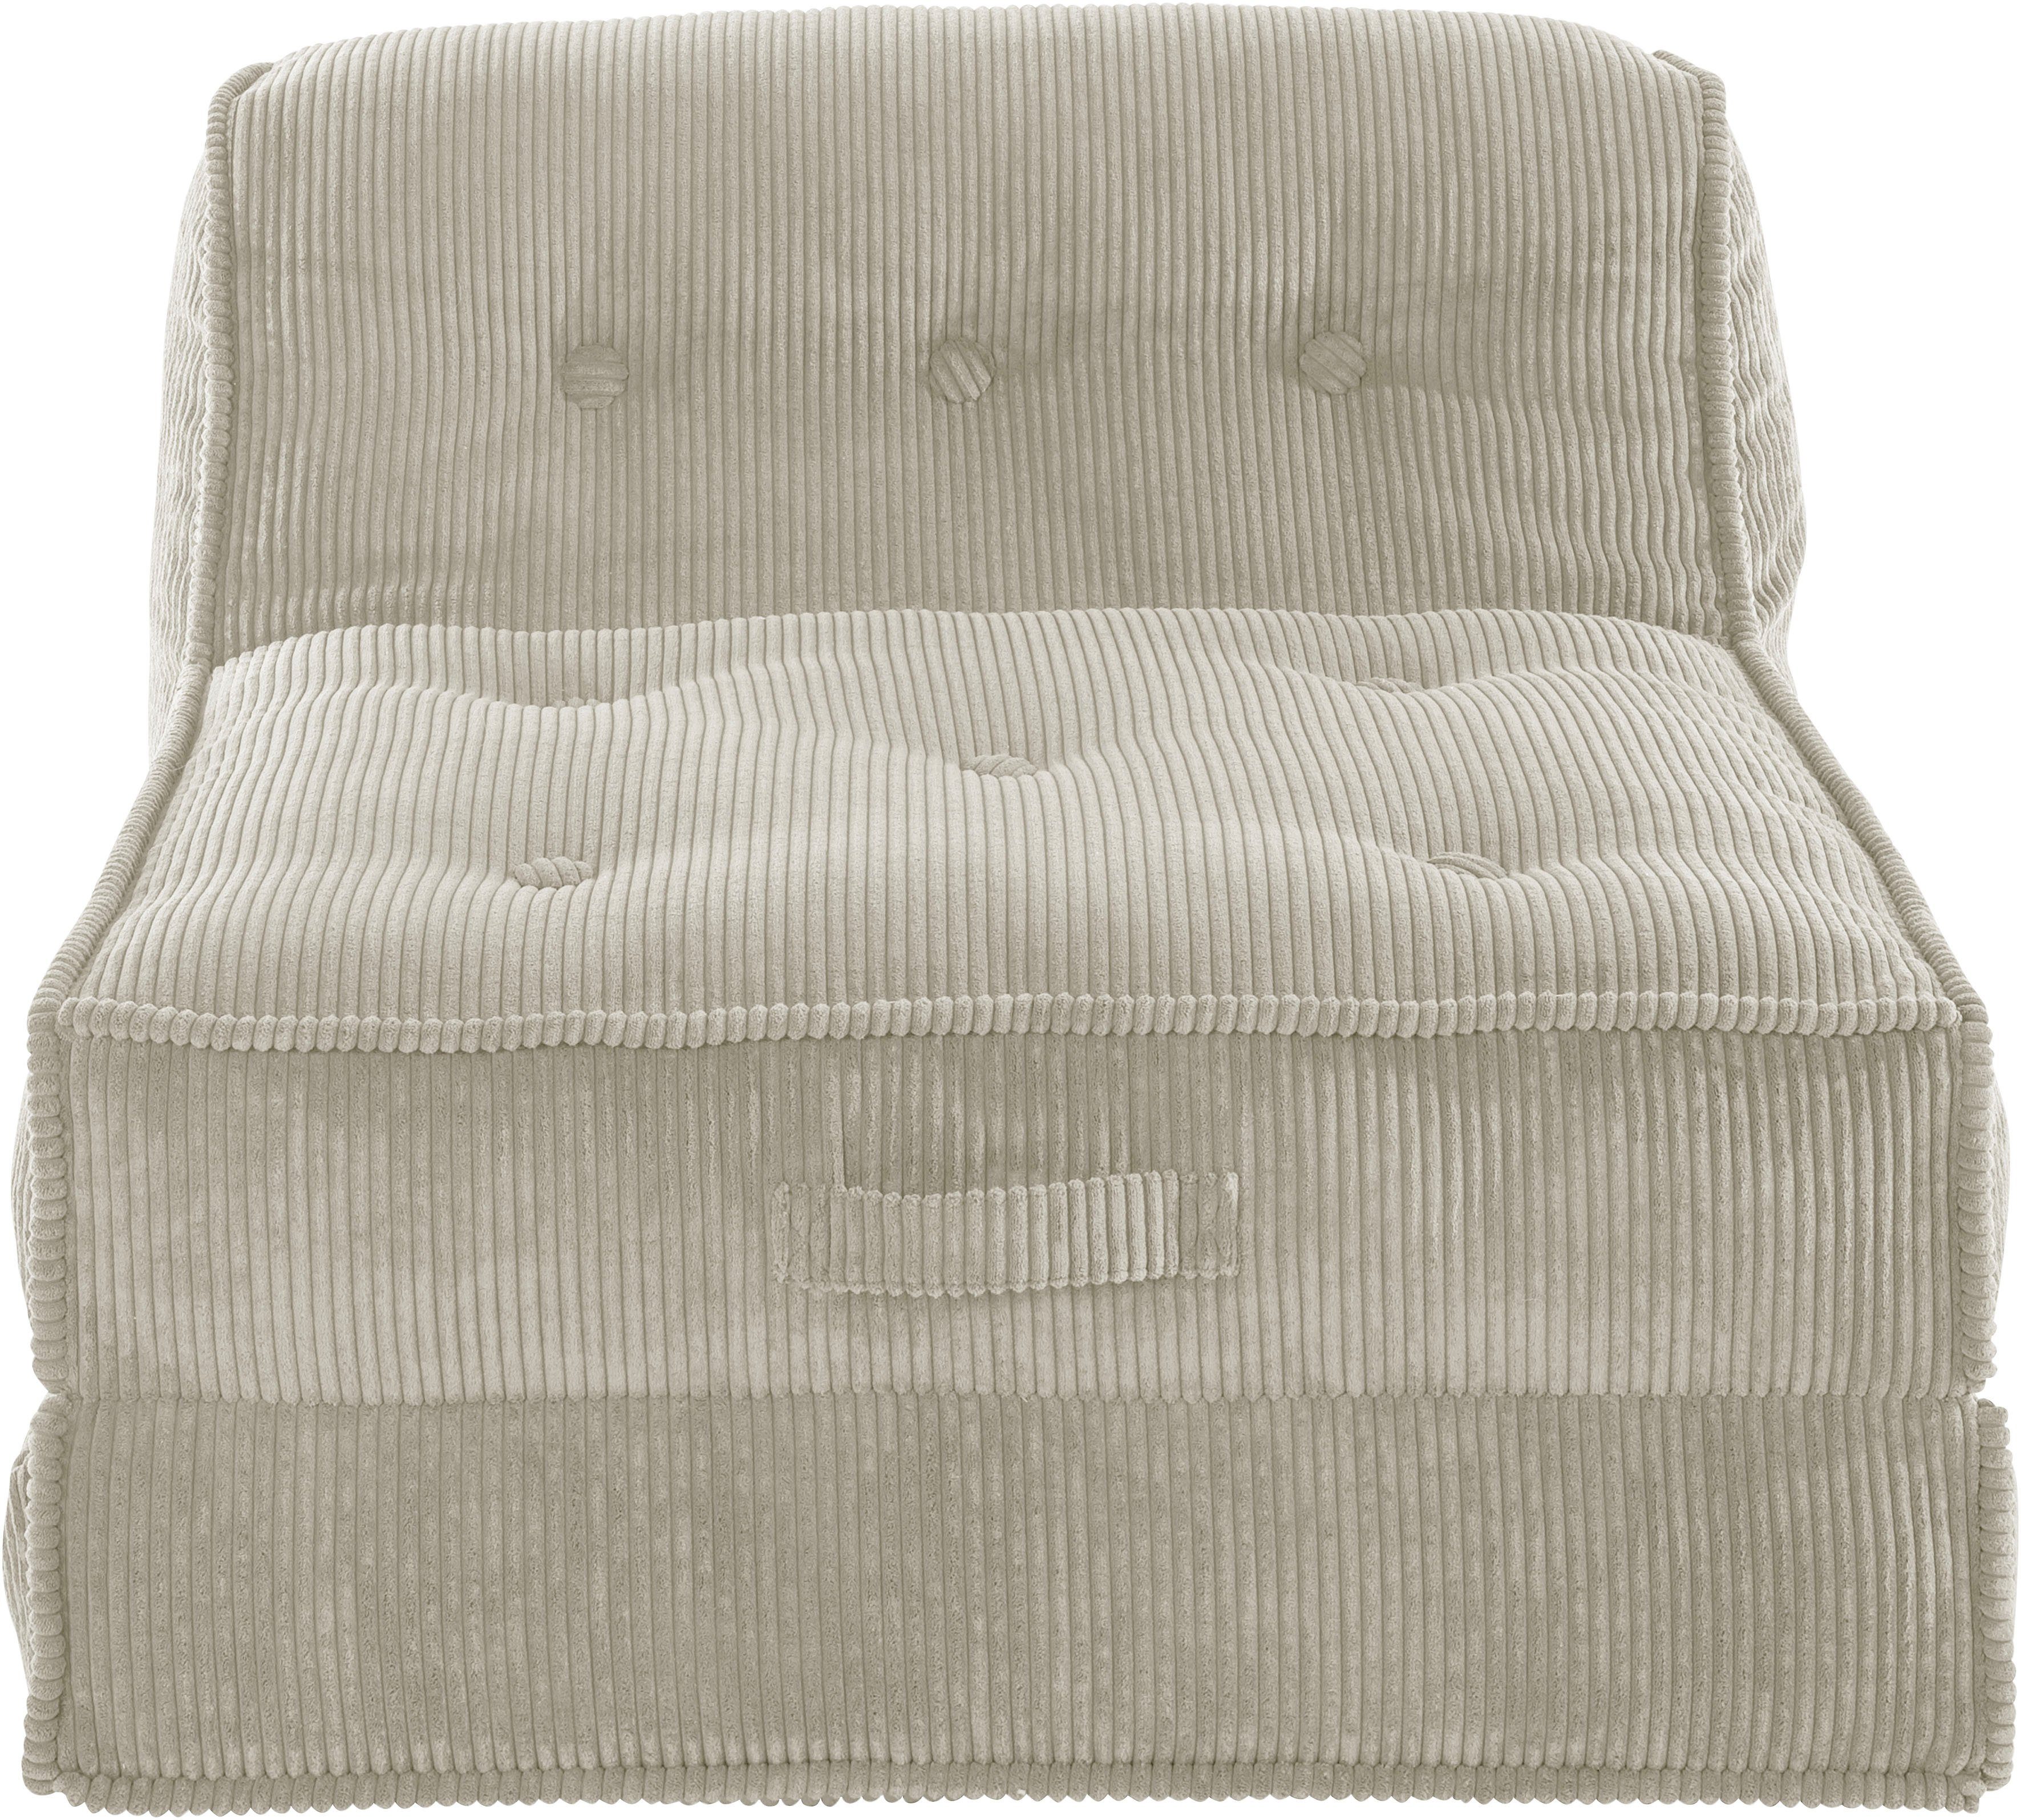 INOSIGN Sessel »Missy«, Loungesessel aus weichem Cord, in 2 Größen, mit Schlaffunktion und Pouf-Funktion.